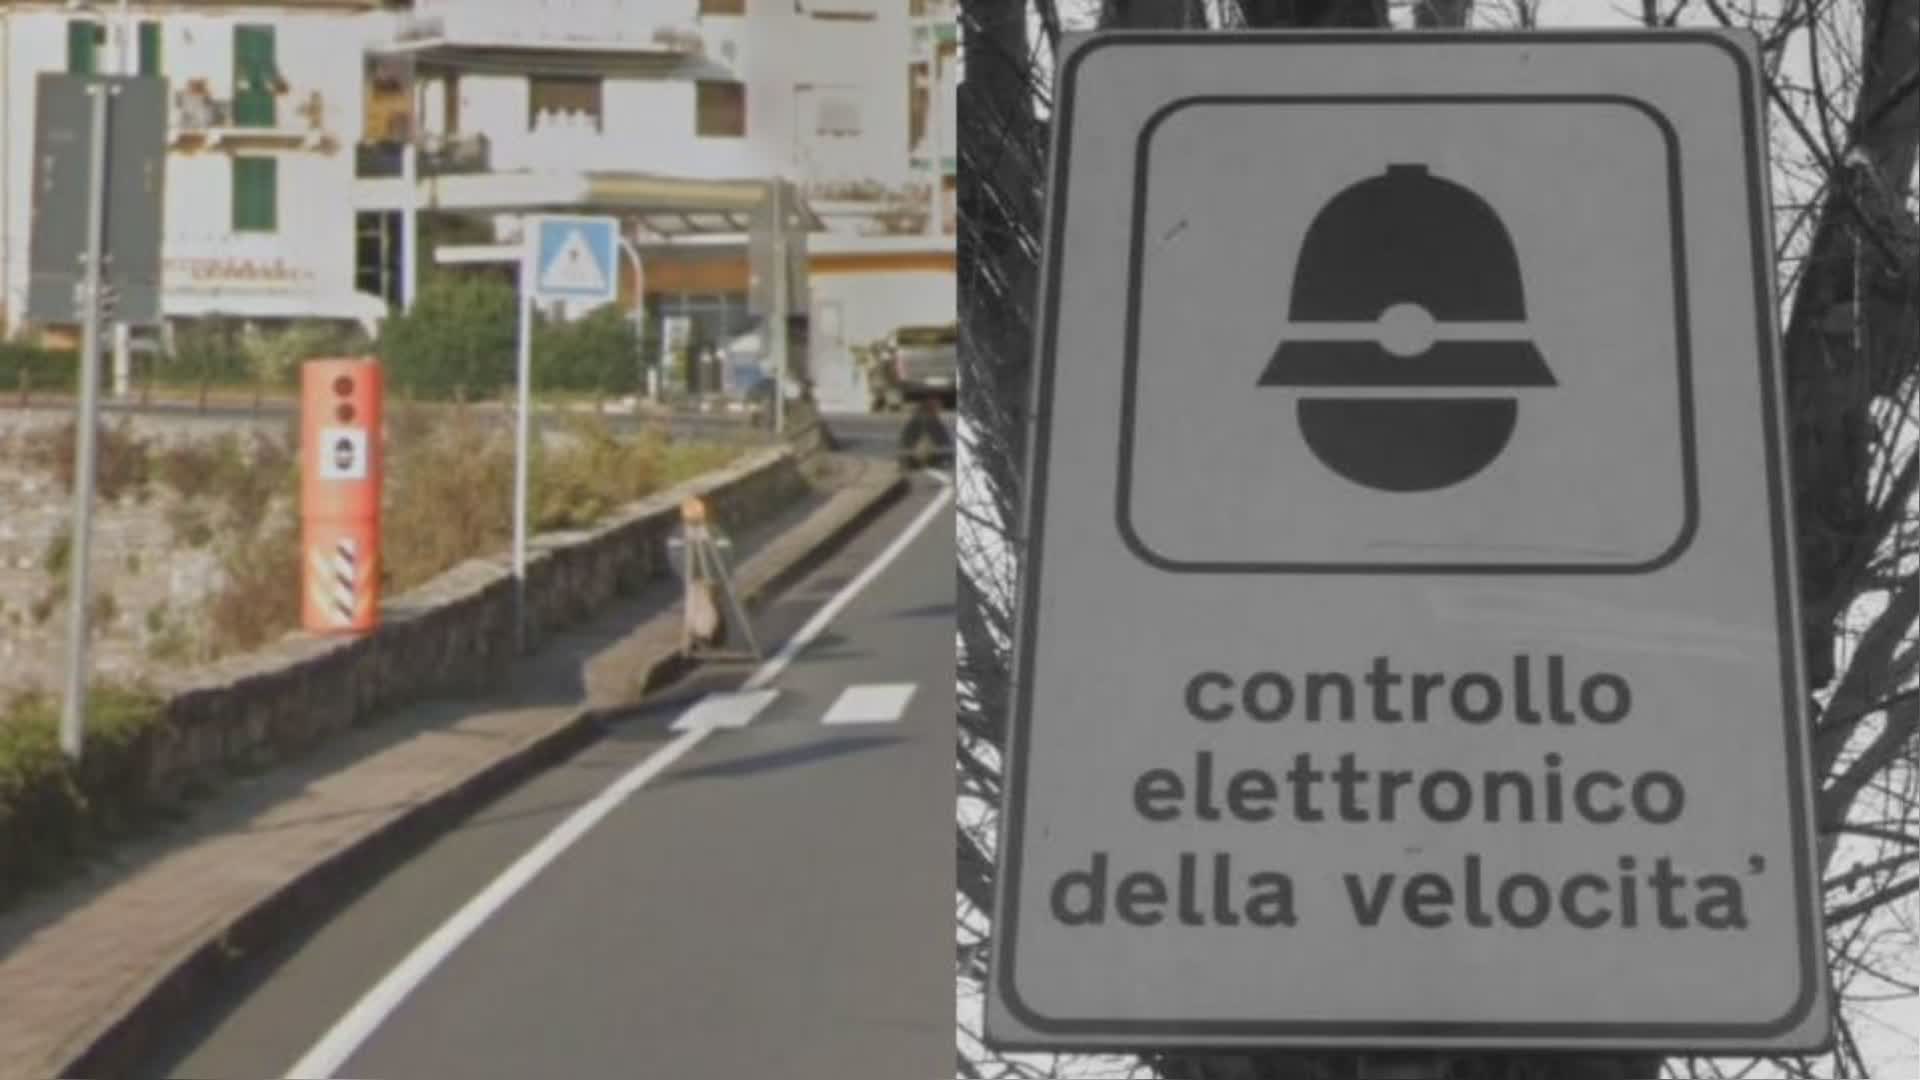 Limite del 30 km/h in città, Toti: "No a decisioni estreme e ideologiche"